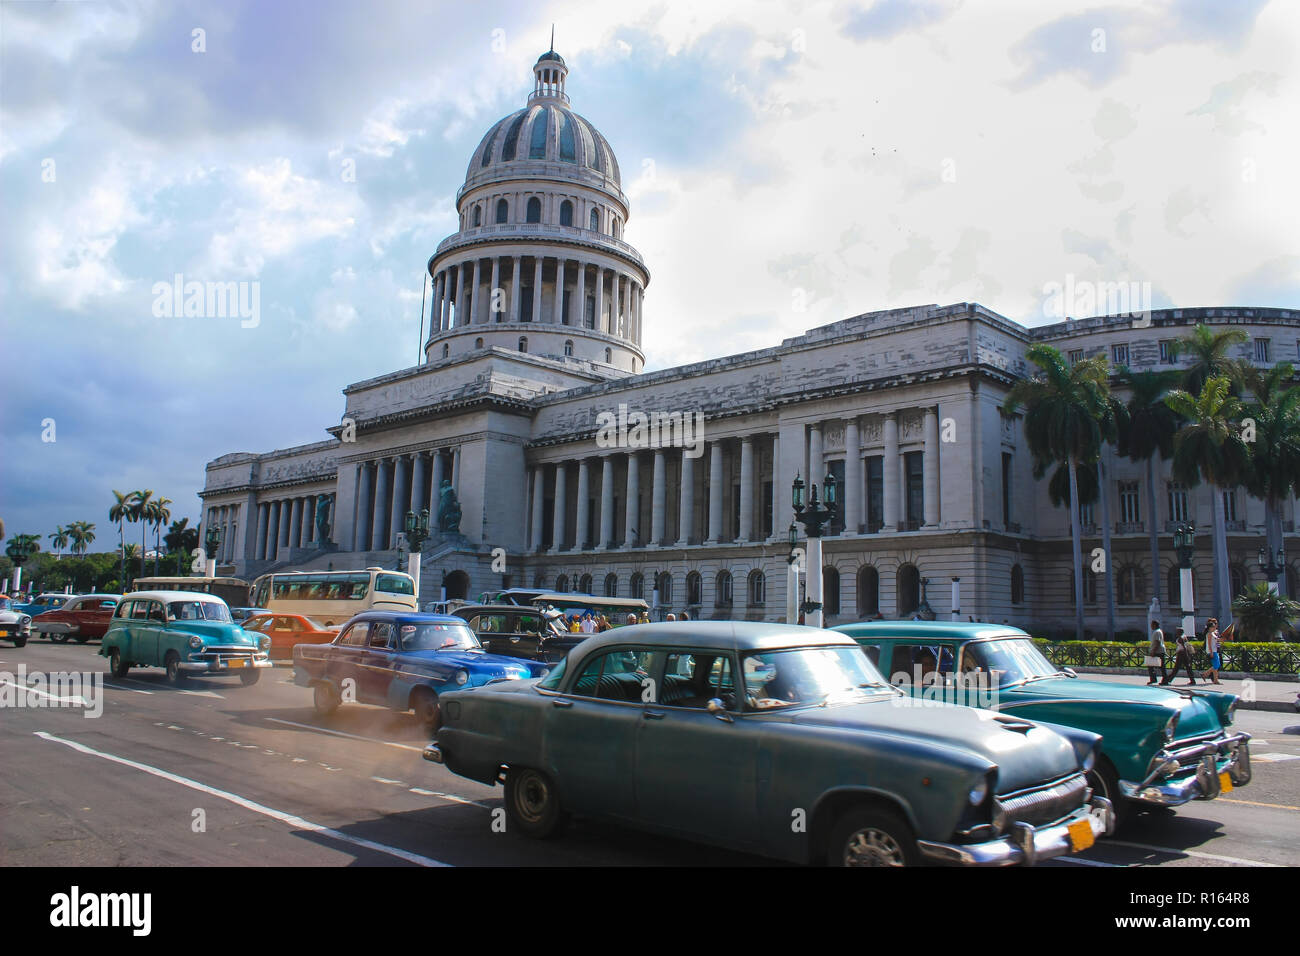 07/07/2015, La Havane, Cuba : l'une des rares fois voyages on peut encore faire sur la planète. Rue animée de Cuba semble comme les années 60 Banque D'Images